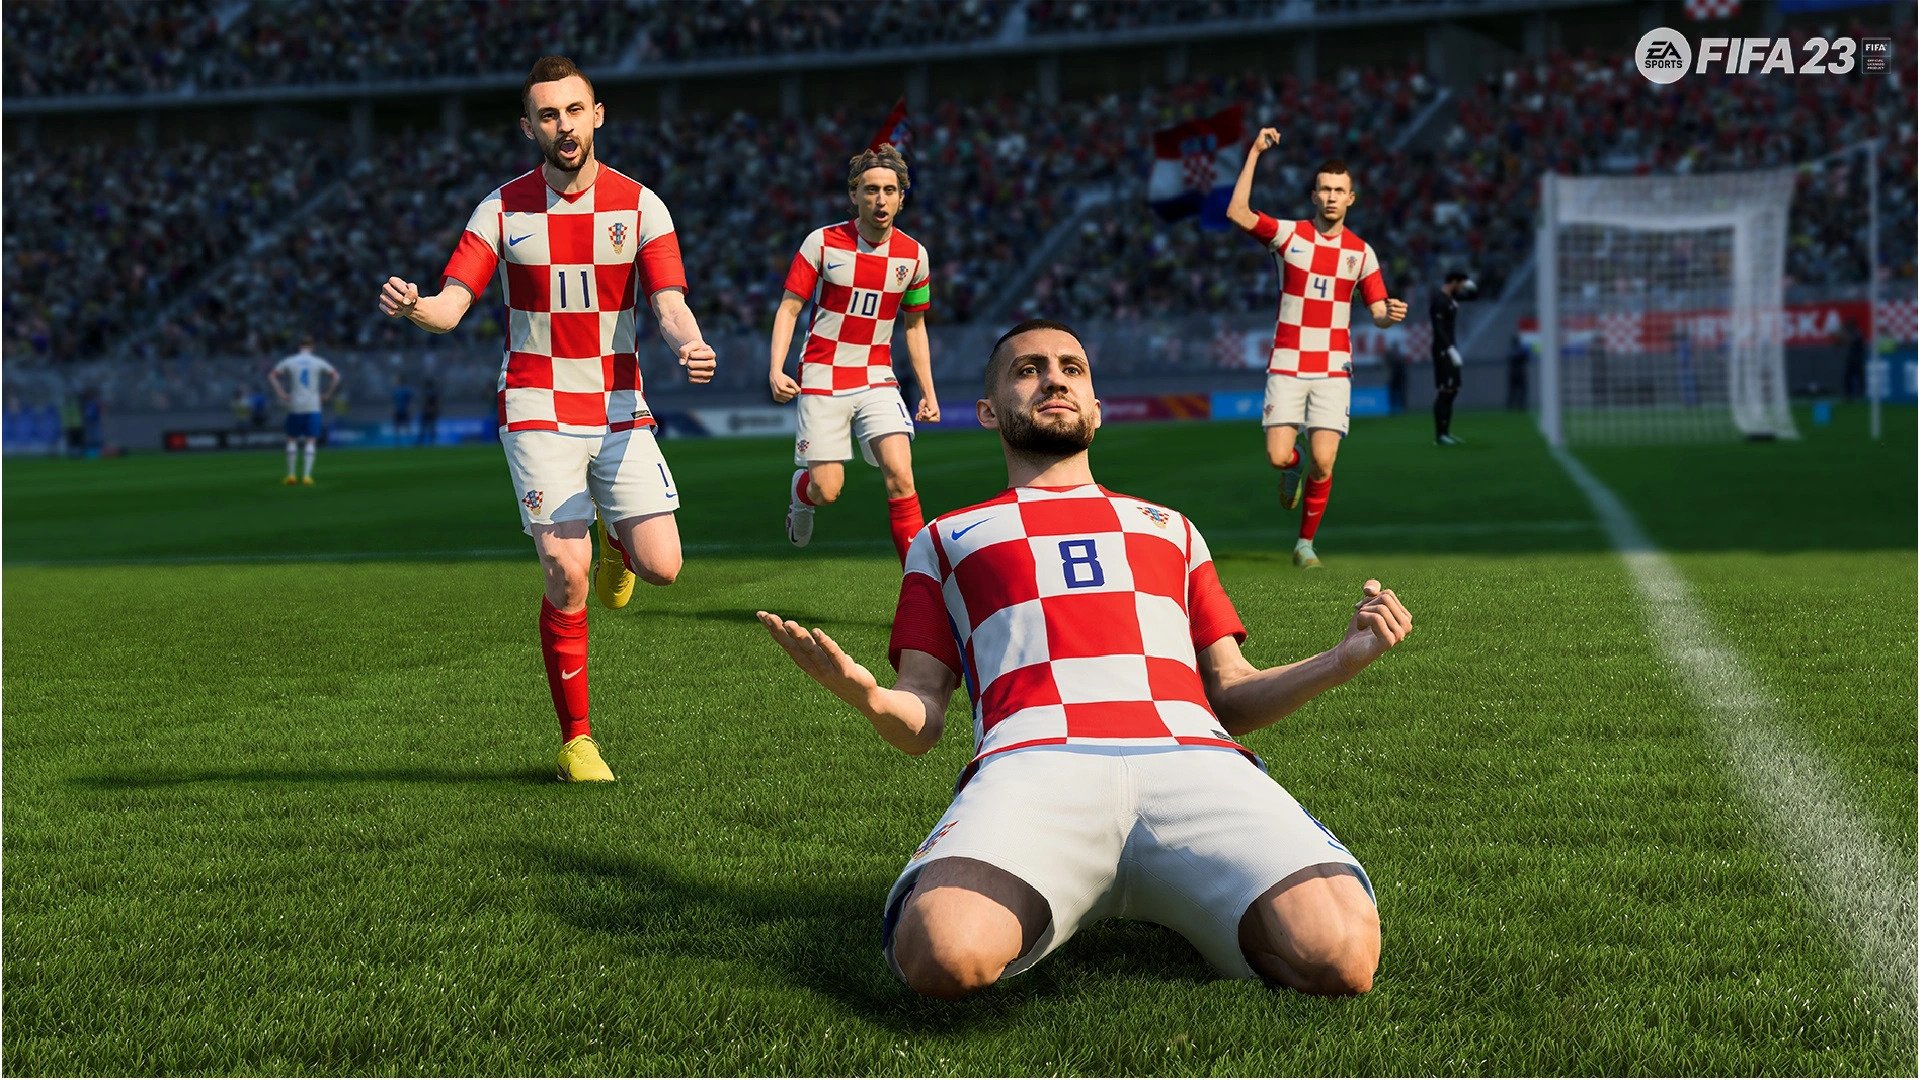 FIFA 23 Update 1.000.017